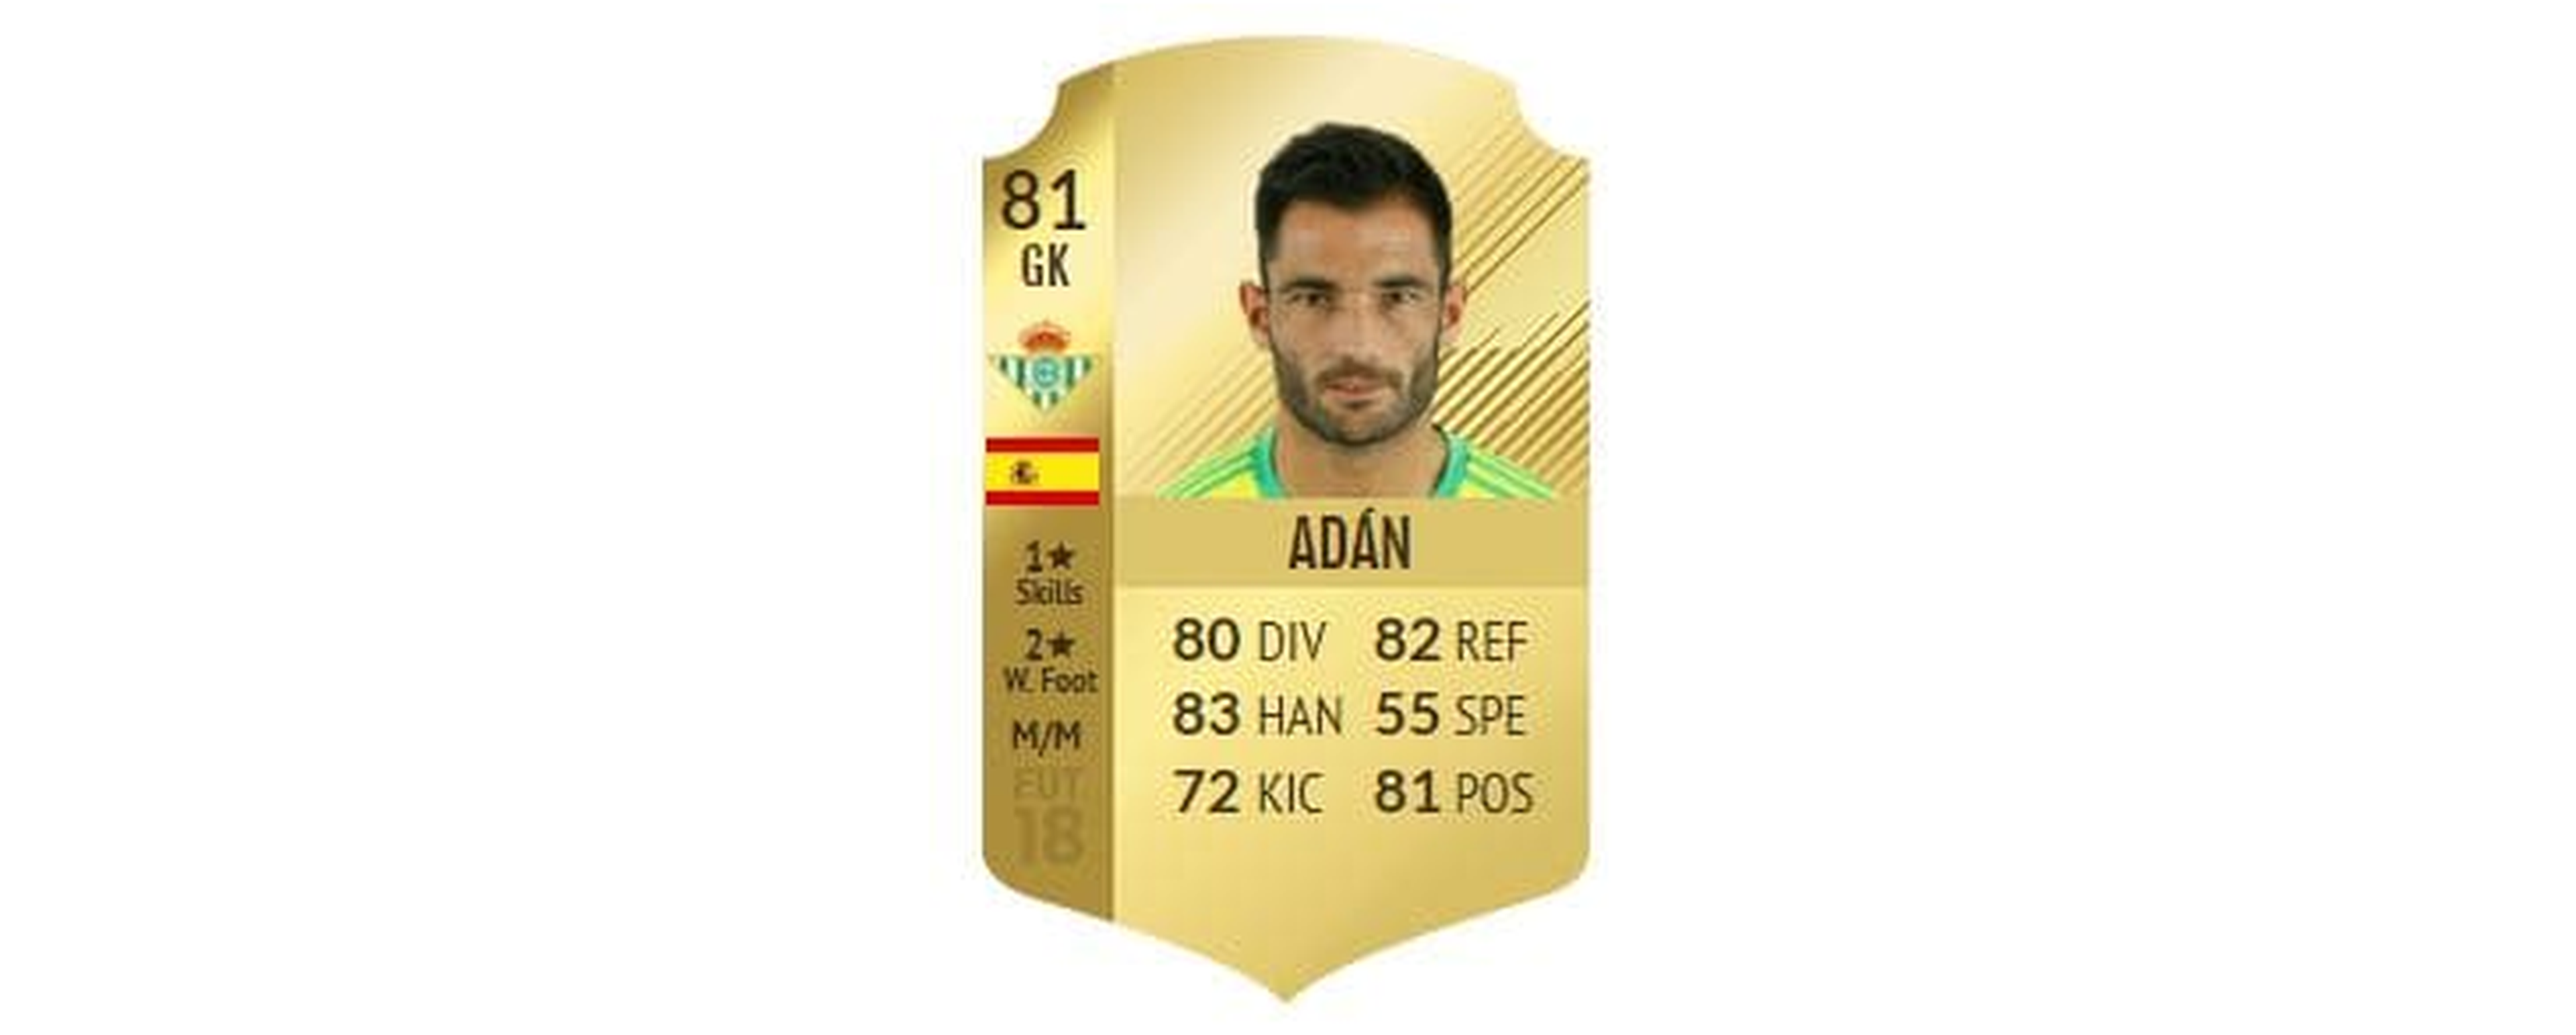 FIFA 18 - Adán